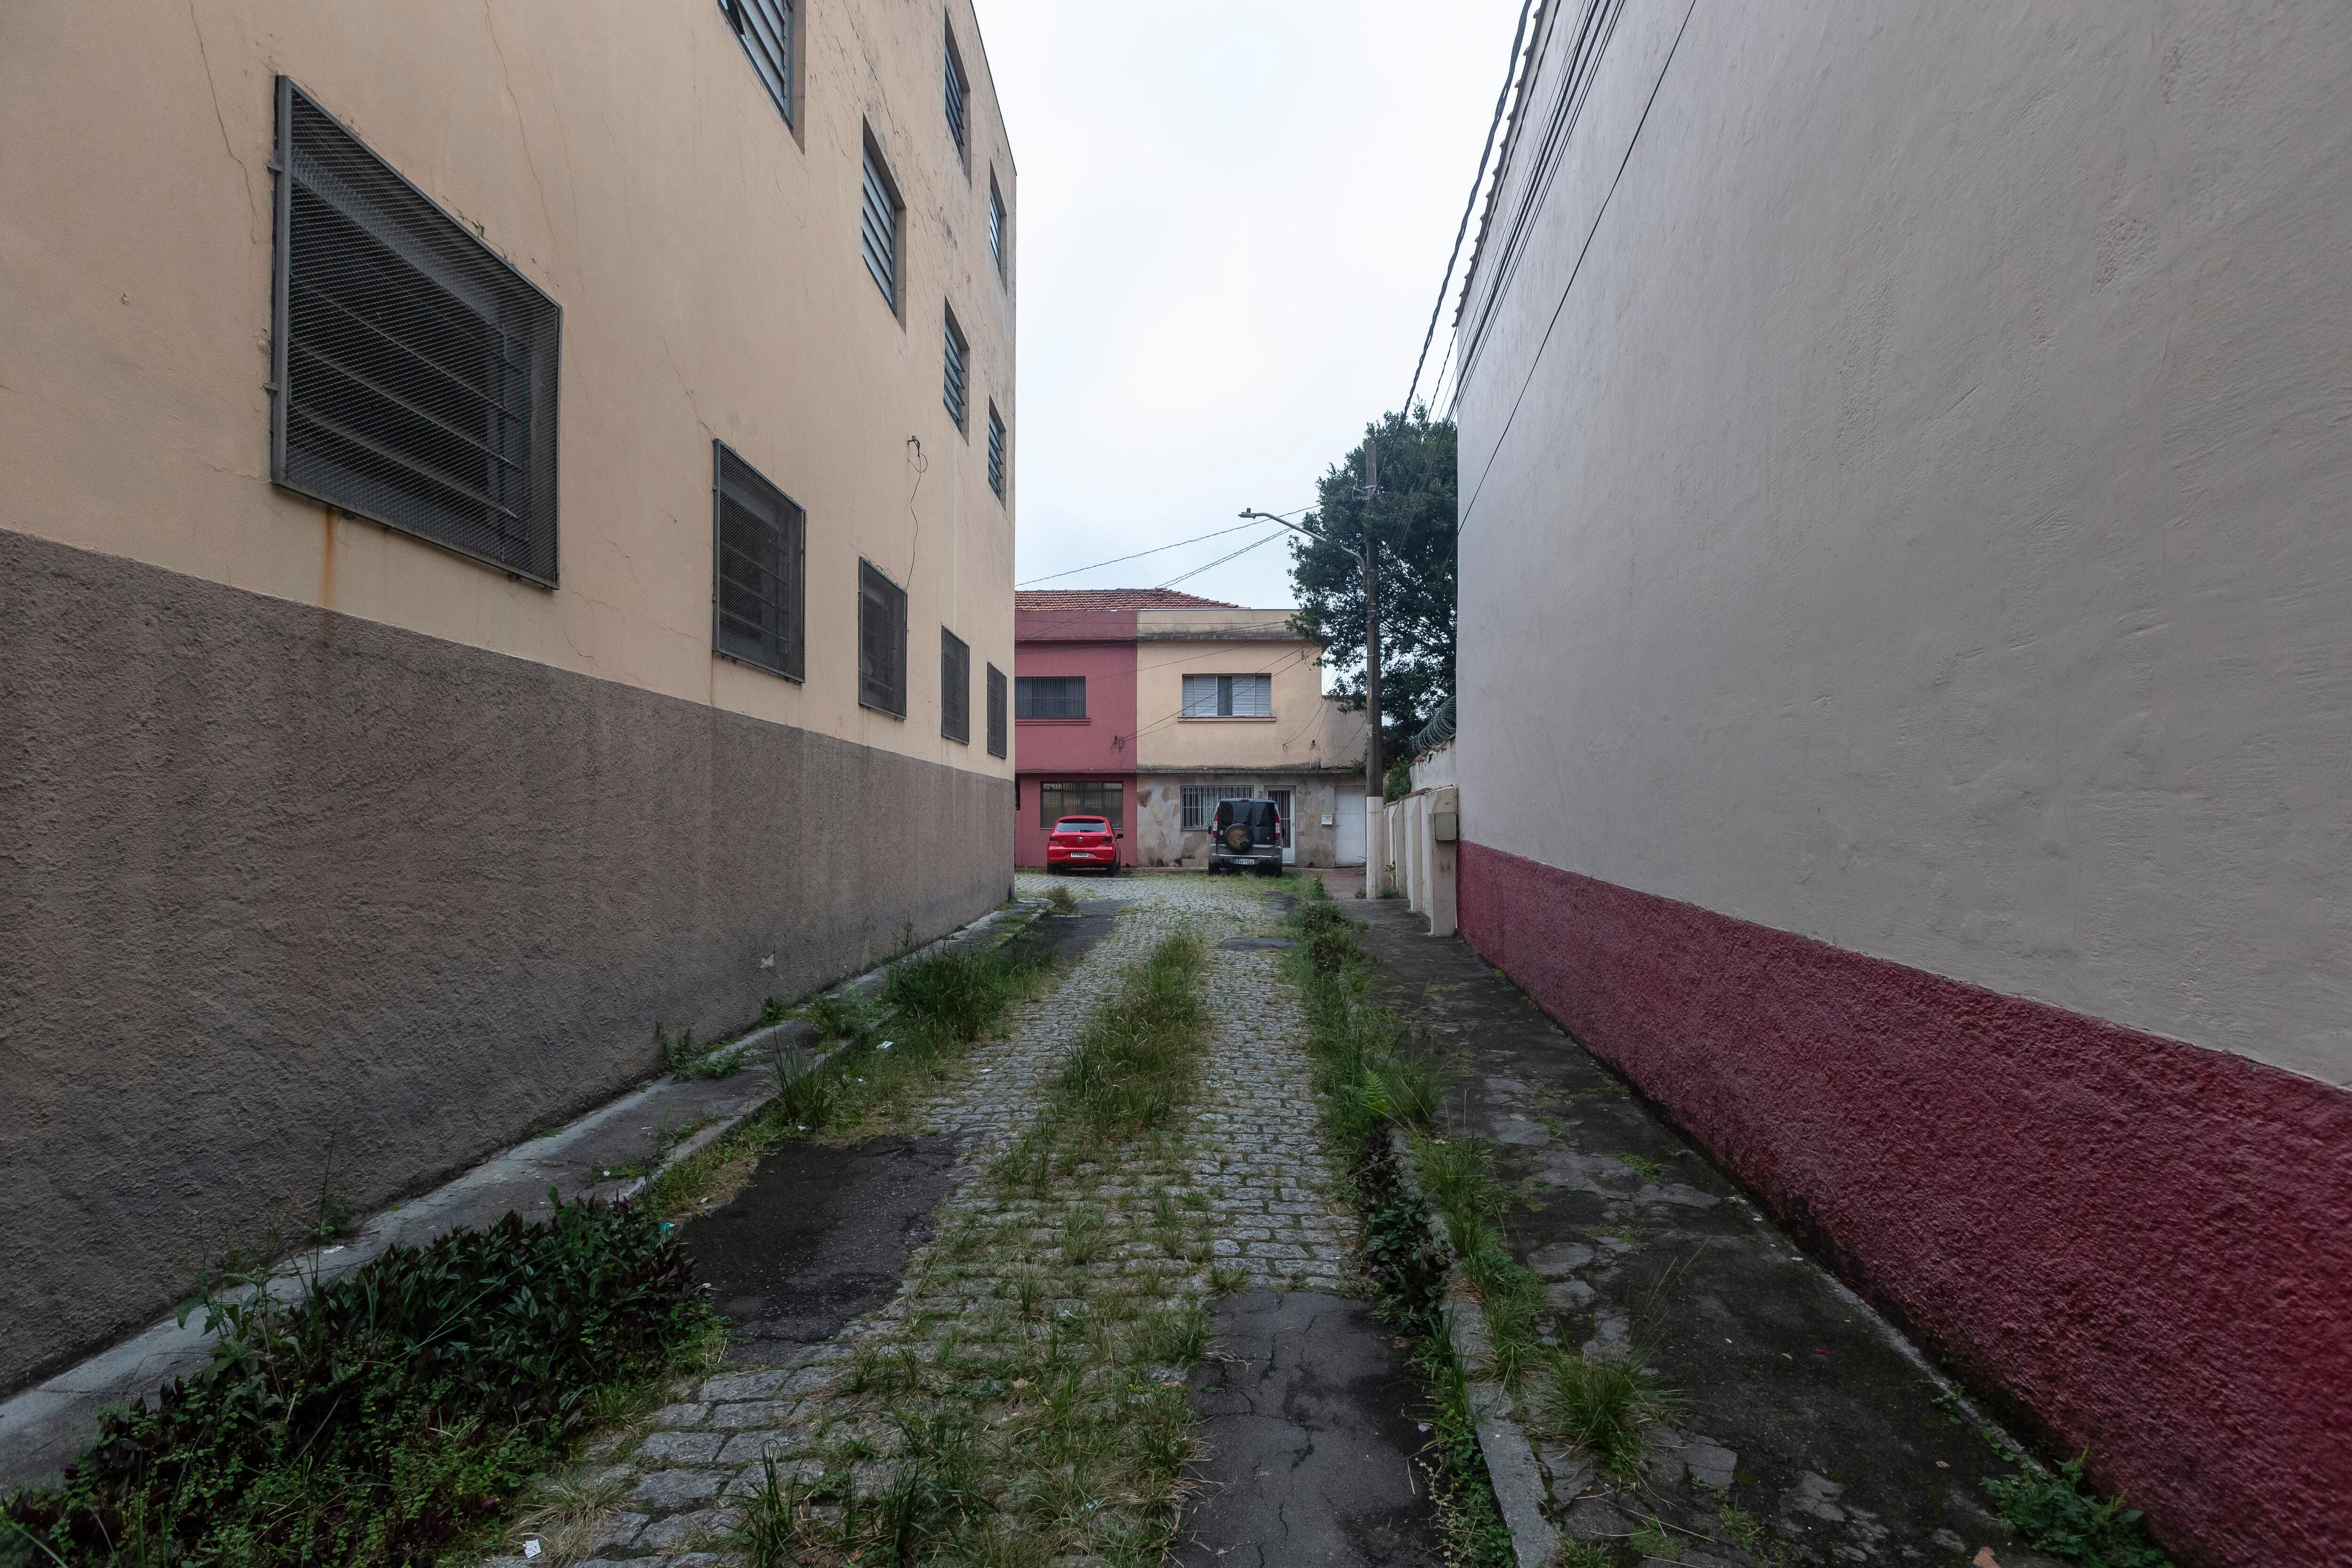 Tombamento provisório de vila no Tatuapé é aprovado após demolição  irregular - Estadão